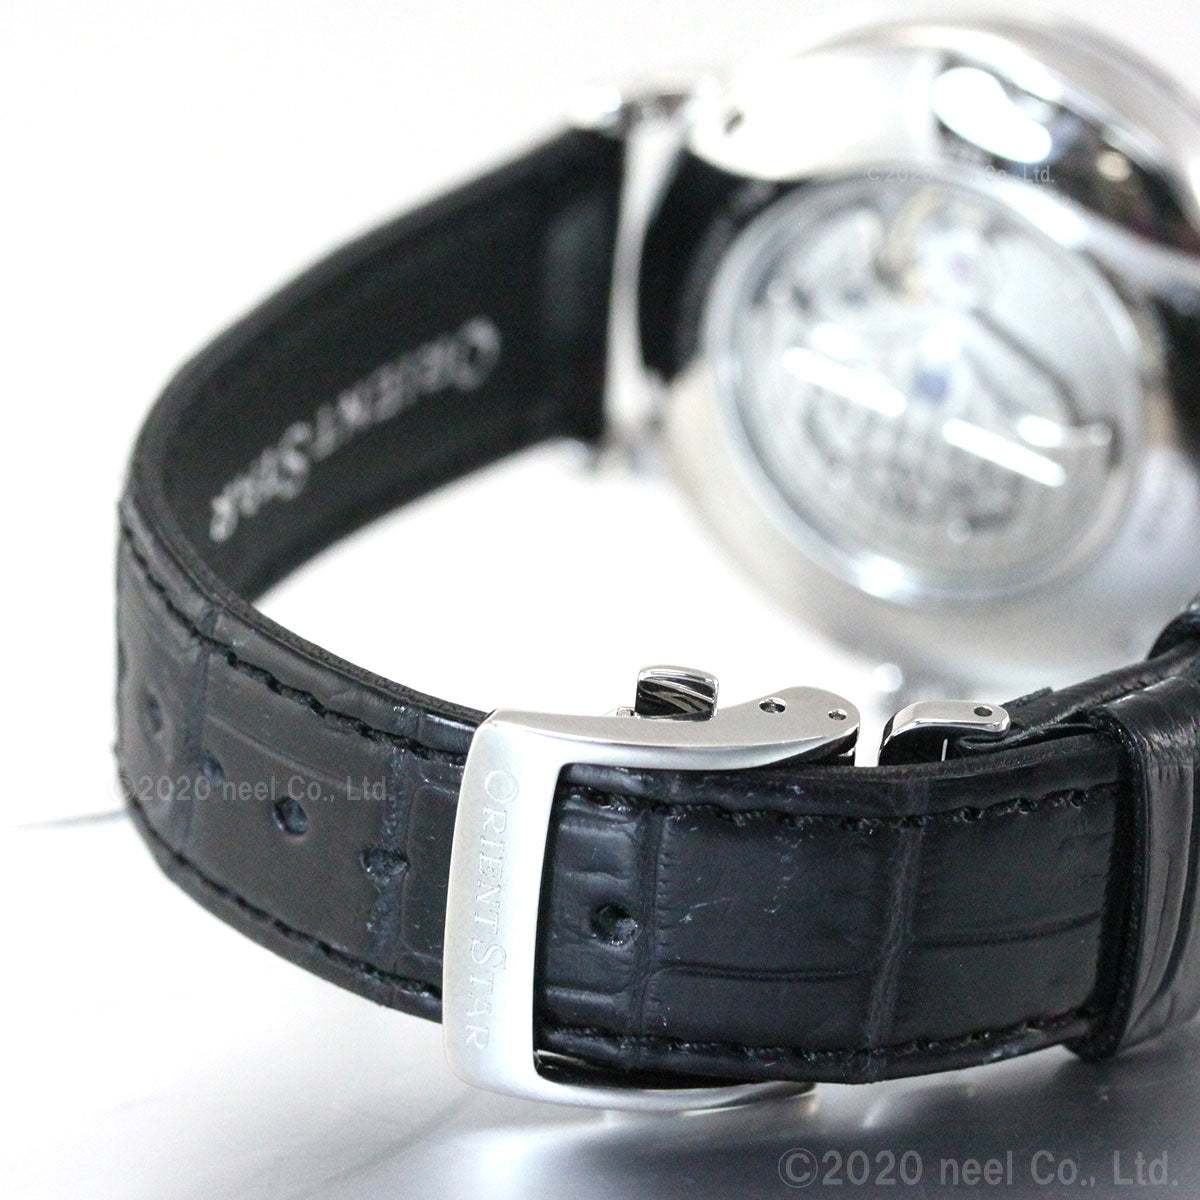 オリエントスター ORIENT STAR 腕時計 メンズ 自動巻き 機械式 クラシック CLASSIC メカニカルムーンフェイズ RK-AY0101S